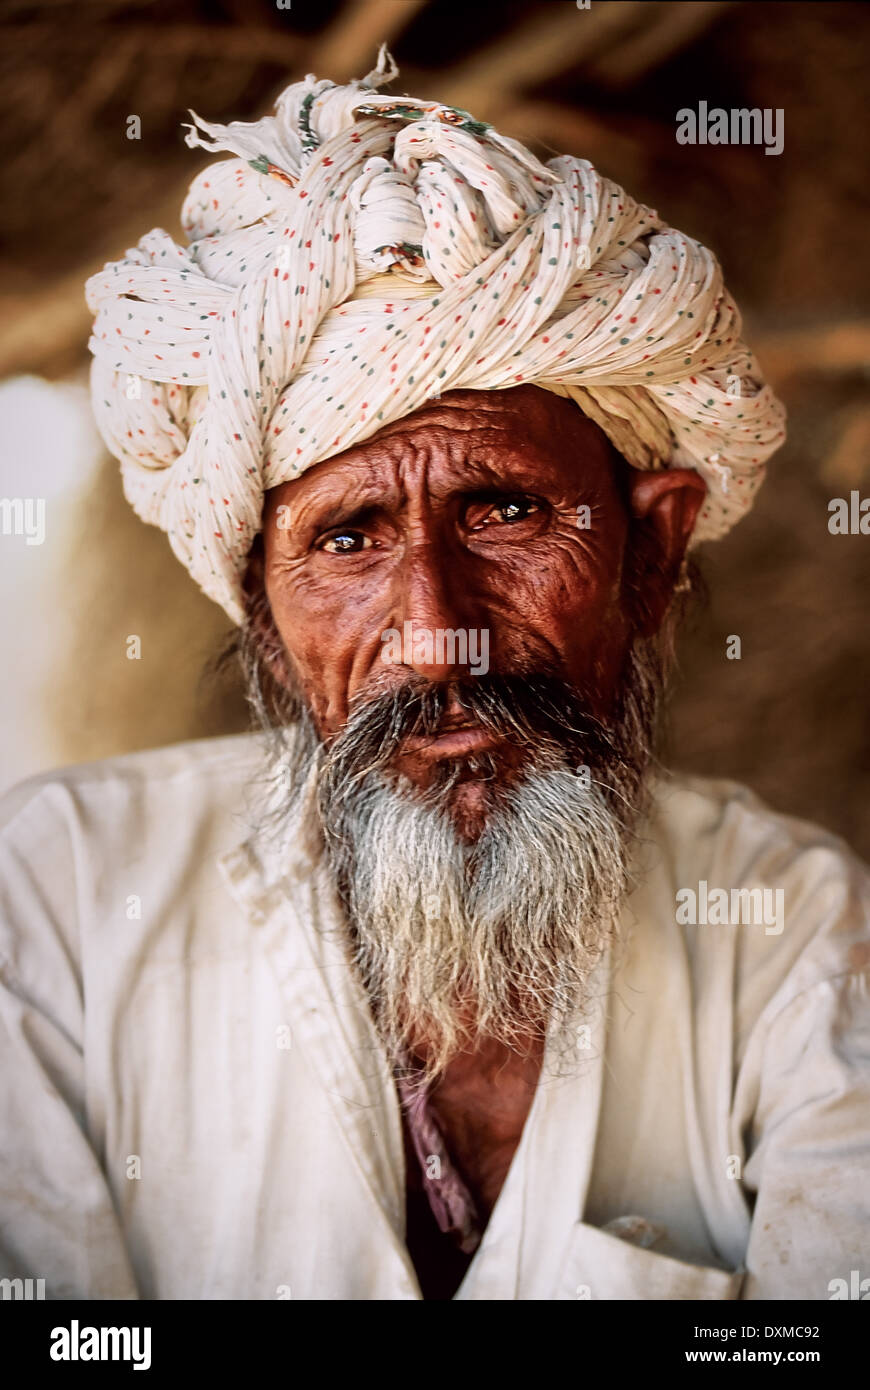 Anziani uomo indiano con sale e pepe in barba un villaggio nei pressi di Jodhpur, India. Manipolati digitalmente immagine. Foto Stock